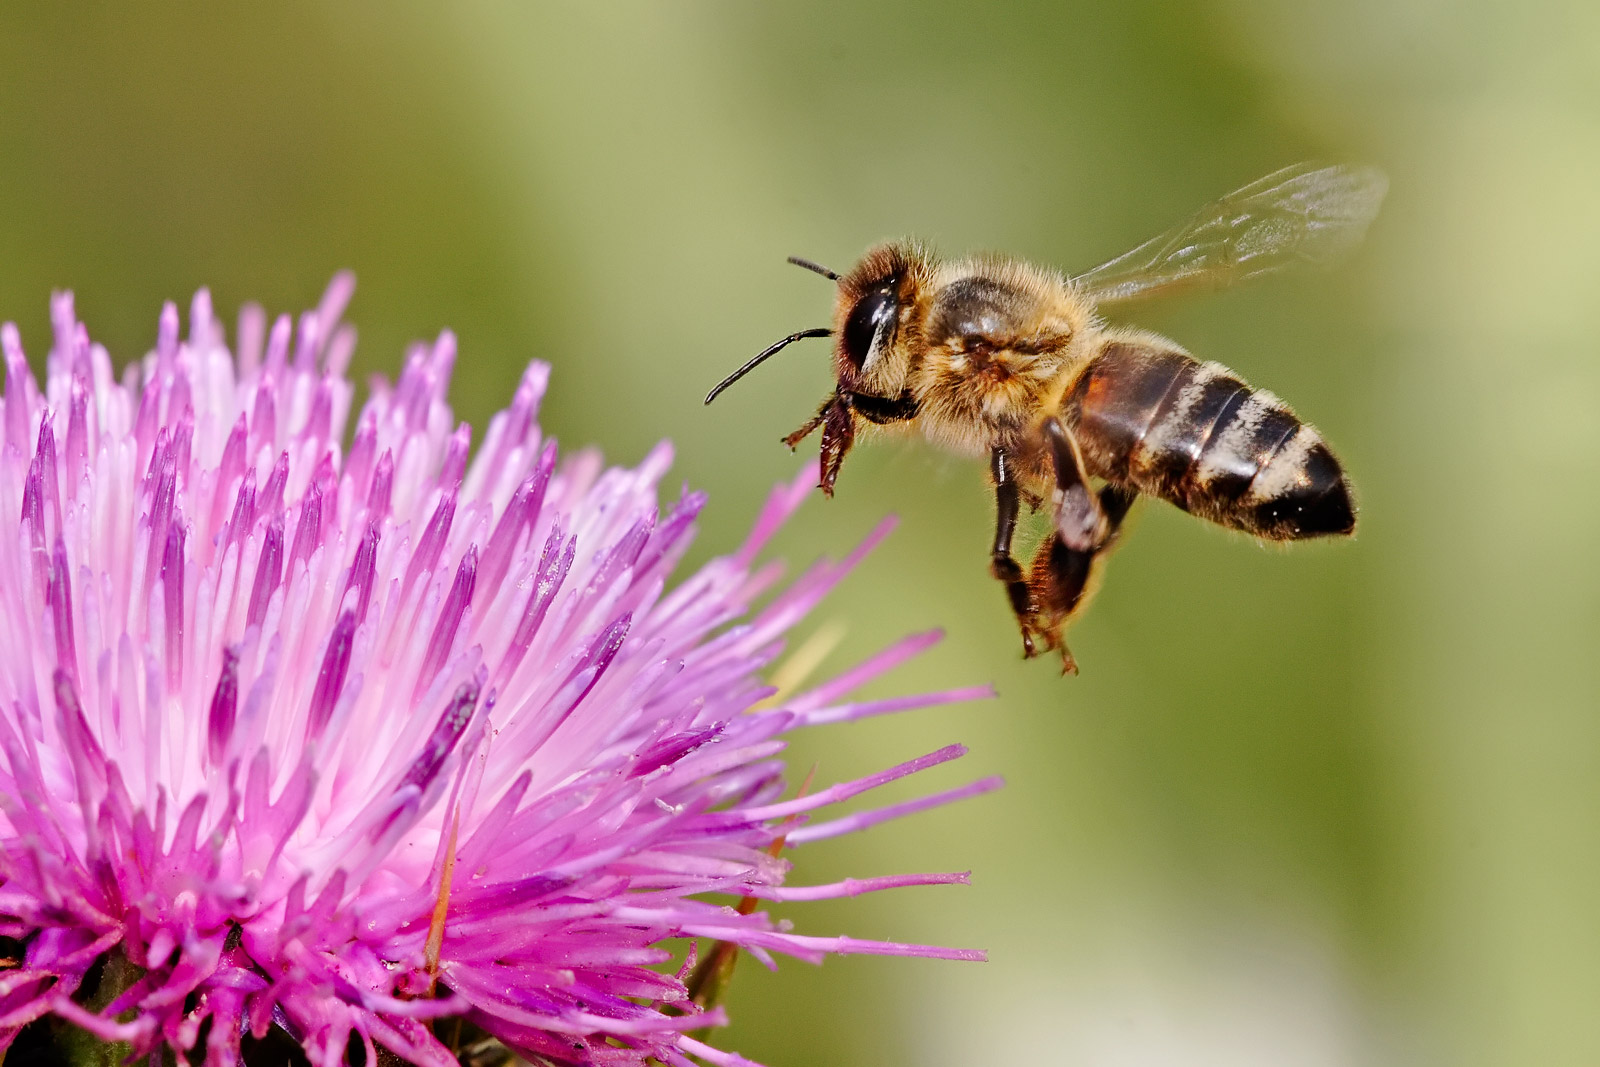 From: http://upload.wikimedia.org/wikipedia/commons/e/e0/Honeybee_landing_on_milkthistle02.jpg